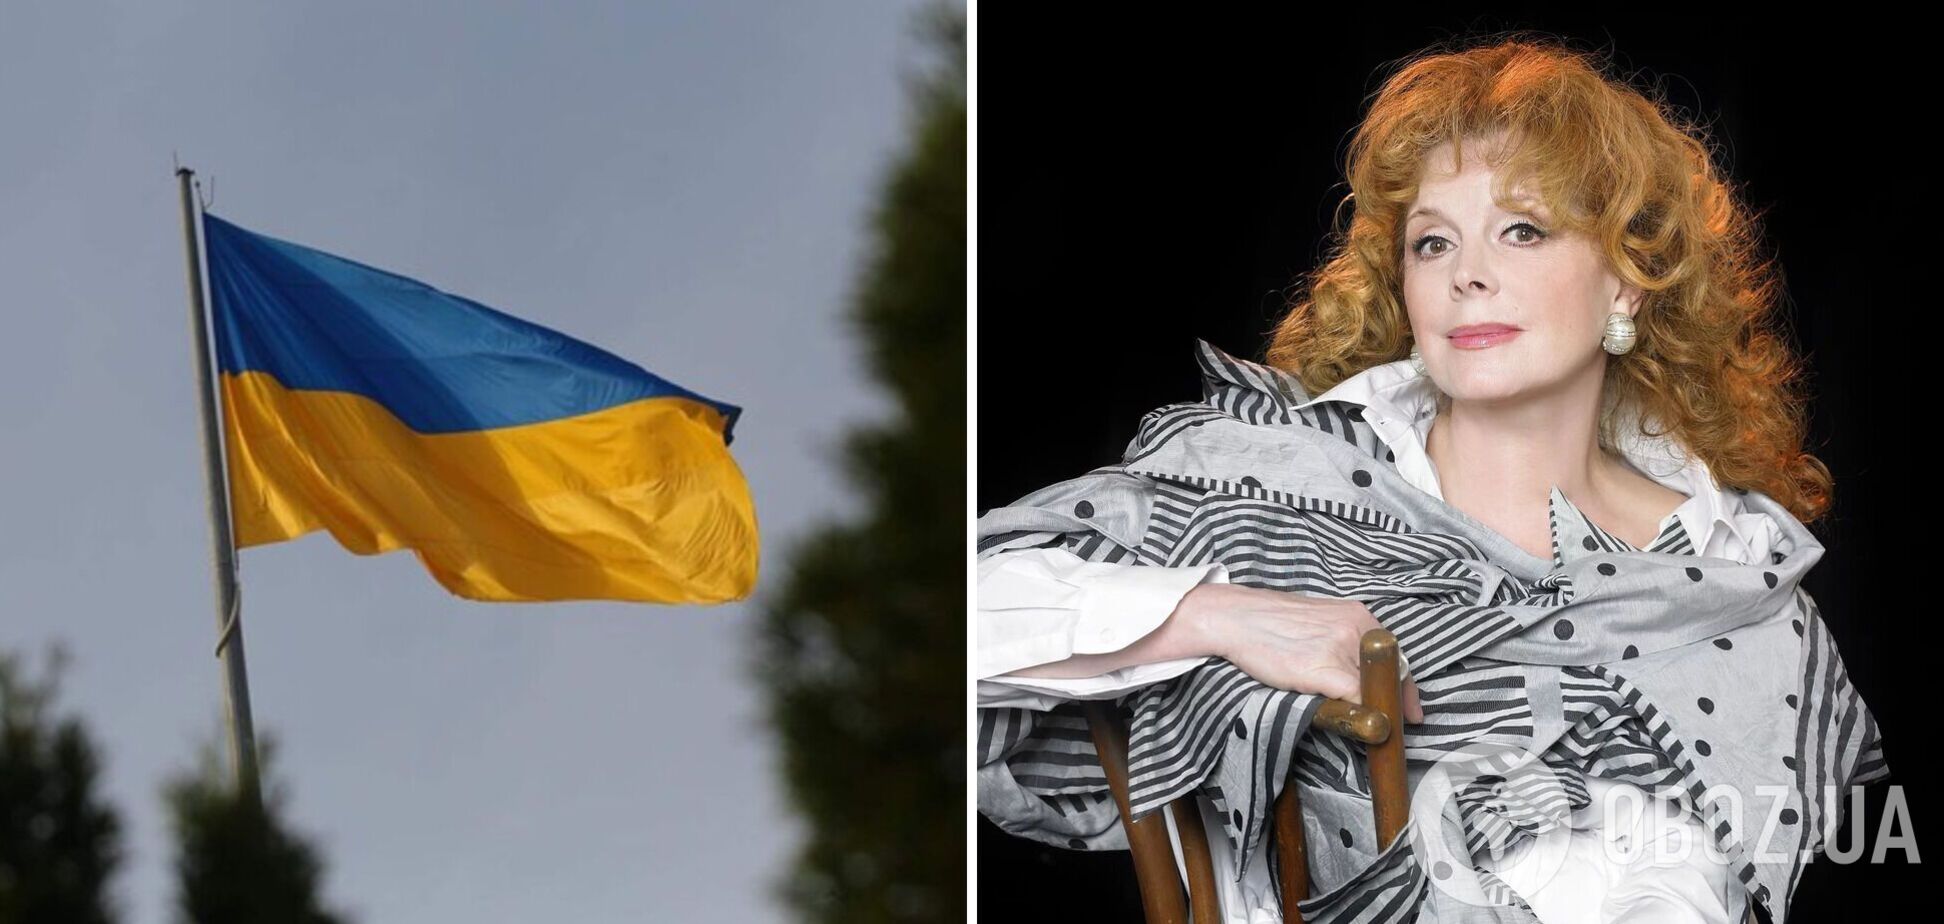 Скандал с Кларой Новиковой и флагом Украины: в России уже 'нашли' след украинских националистов